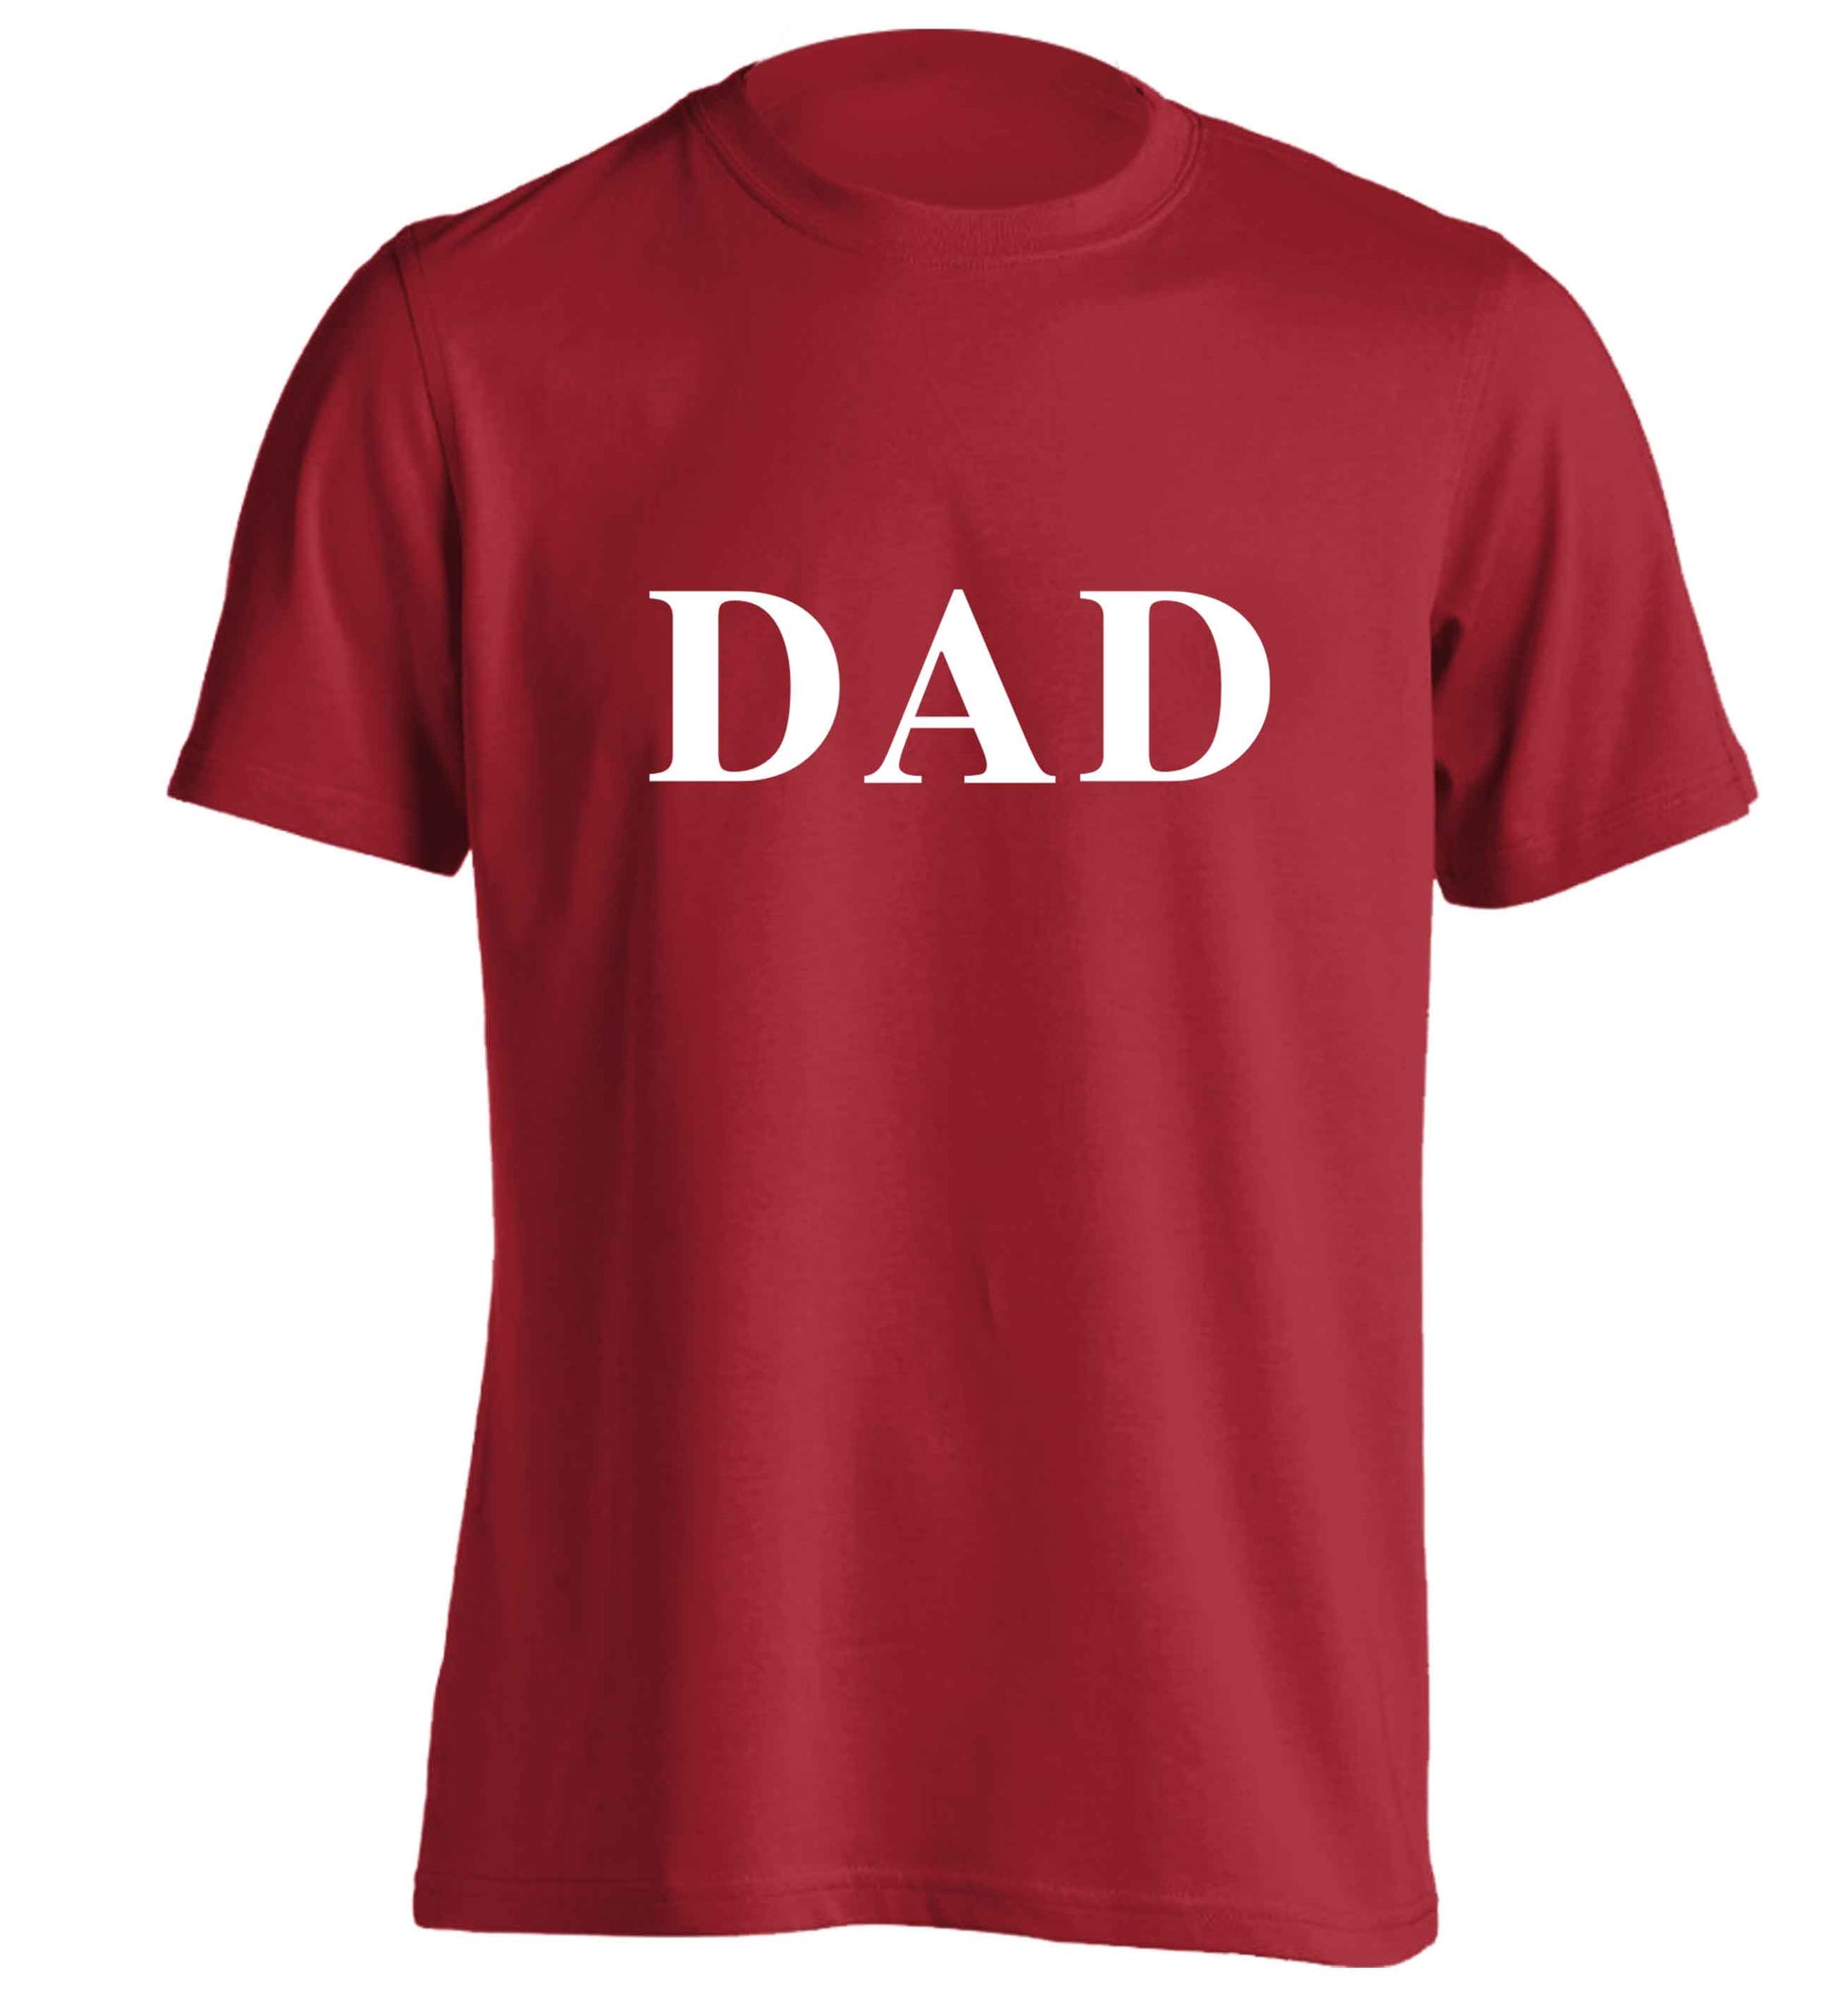 Dad adults unisex red Tshirt 2XL